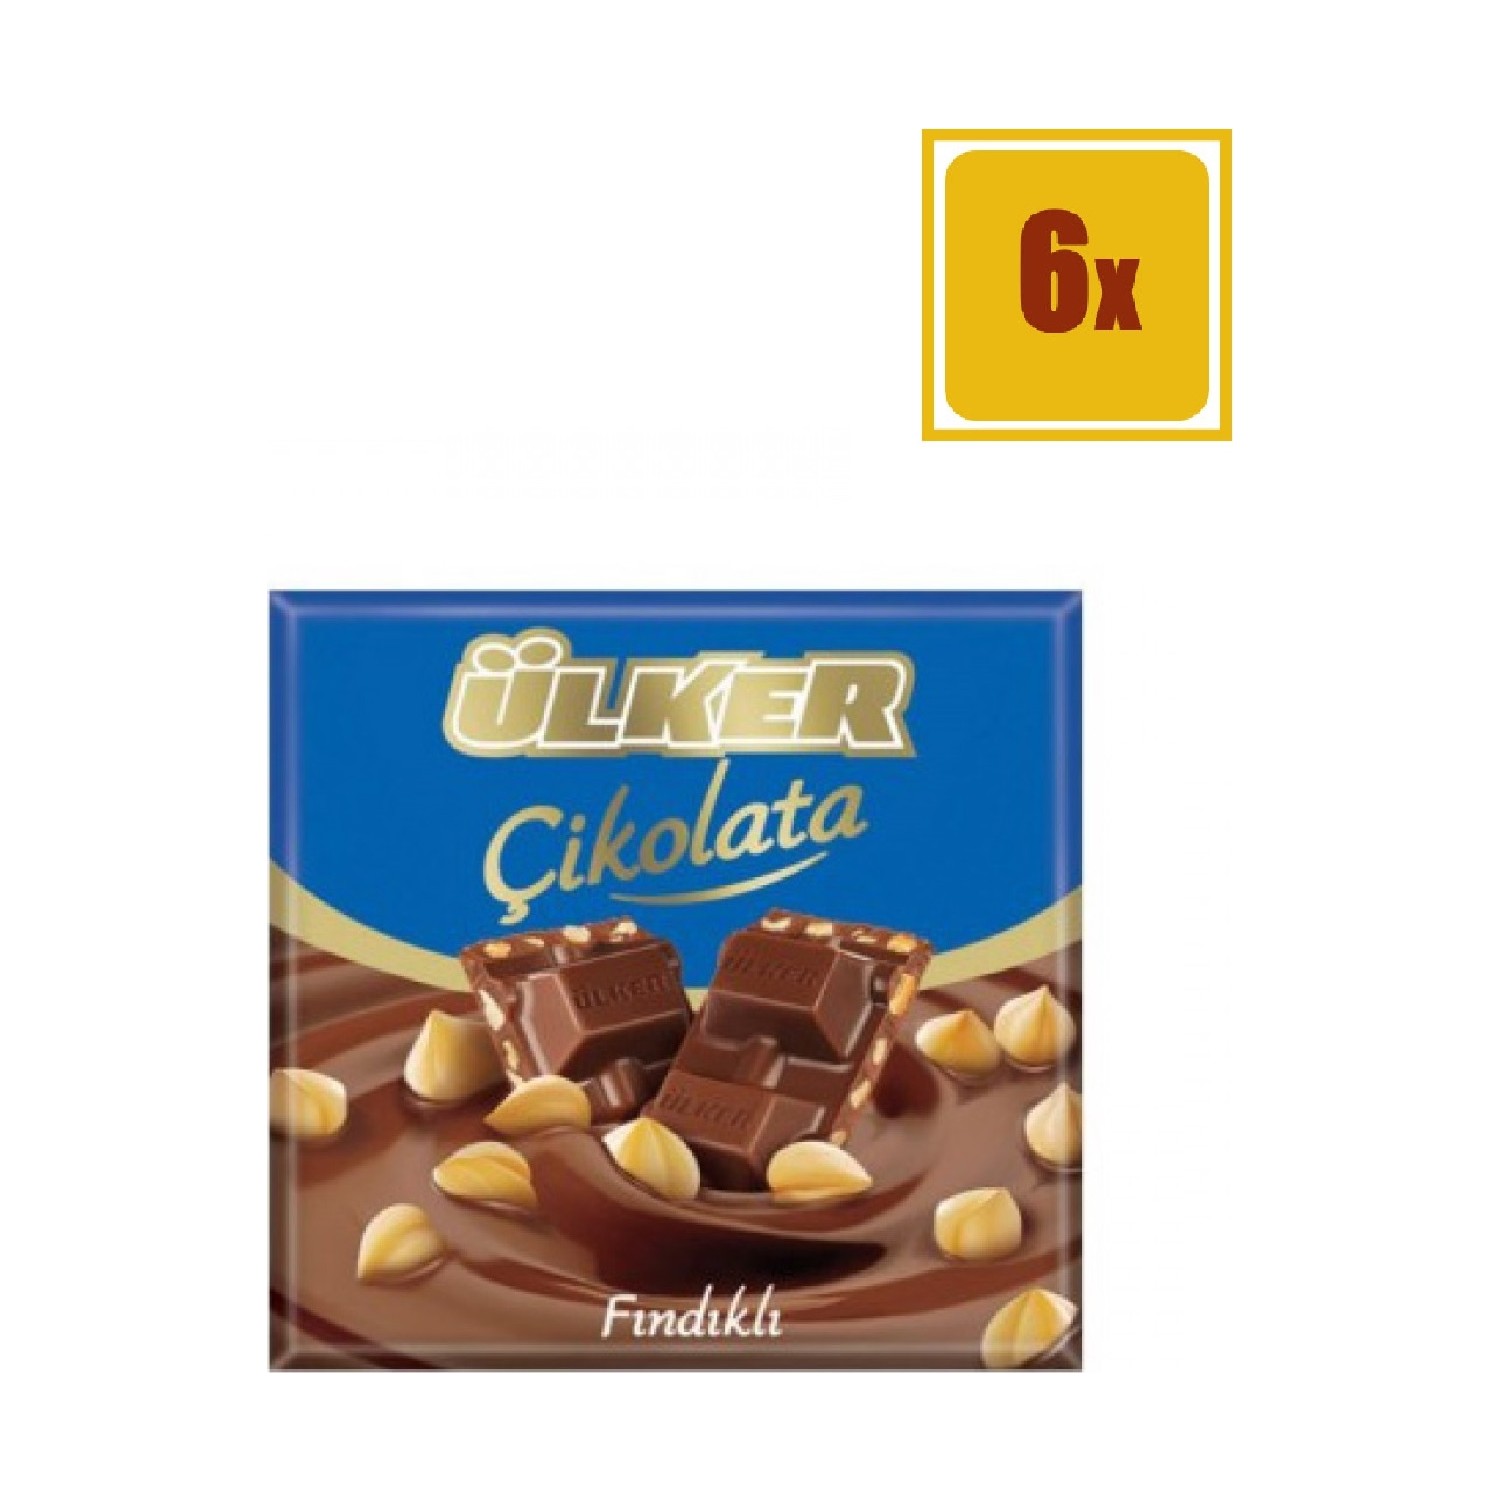 Ülker Çikolata Fındıklı Kare 70 gr 6'Lı Set Fiyatı